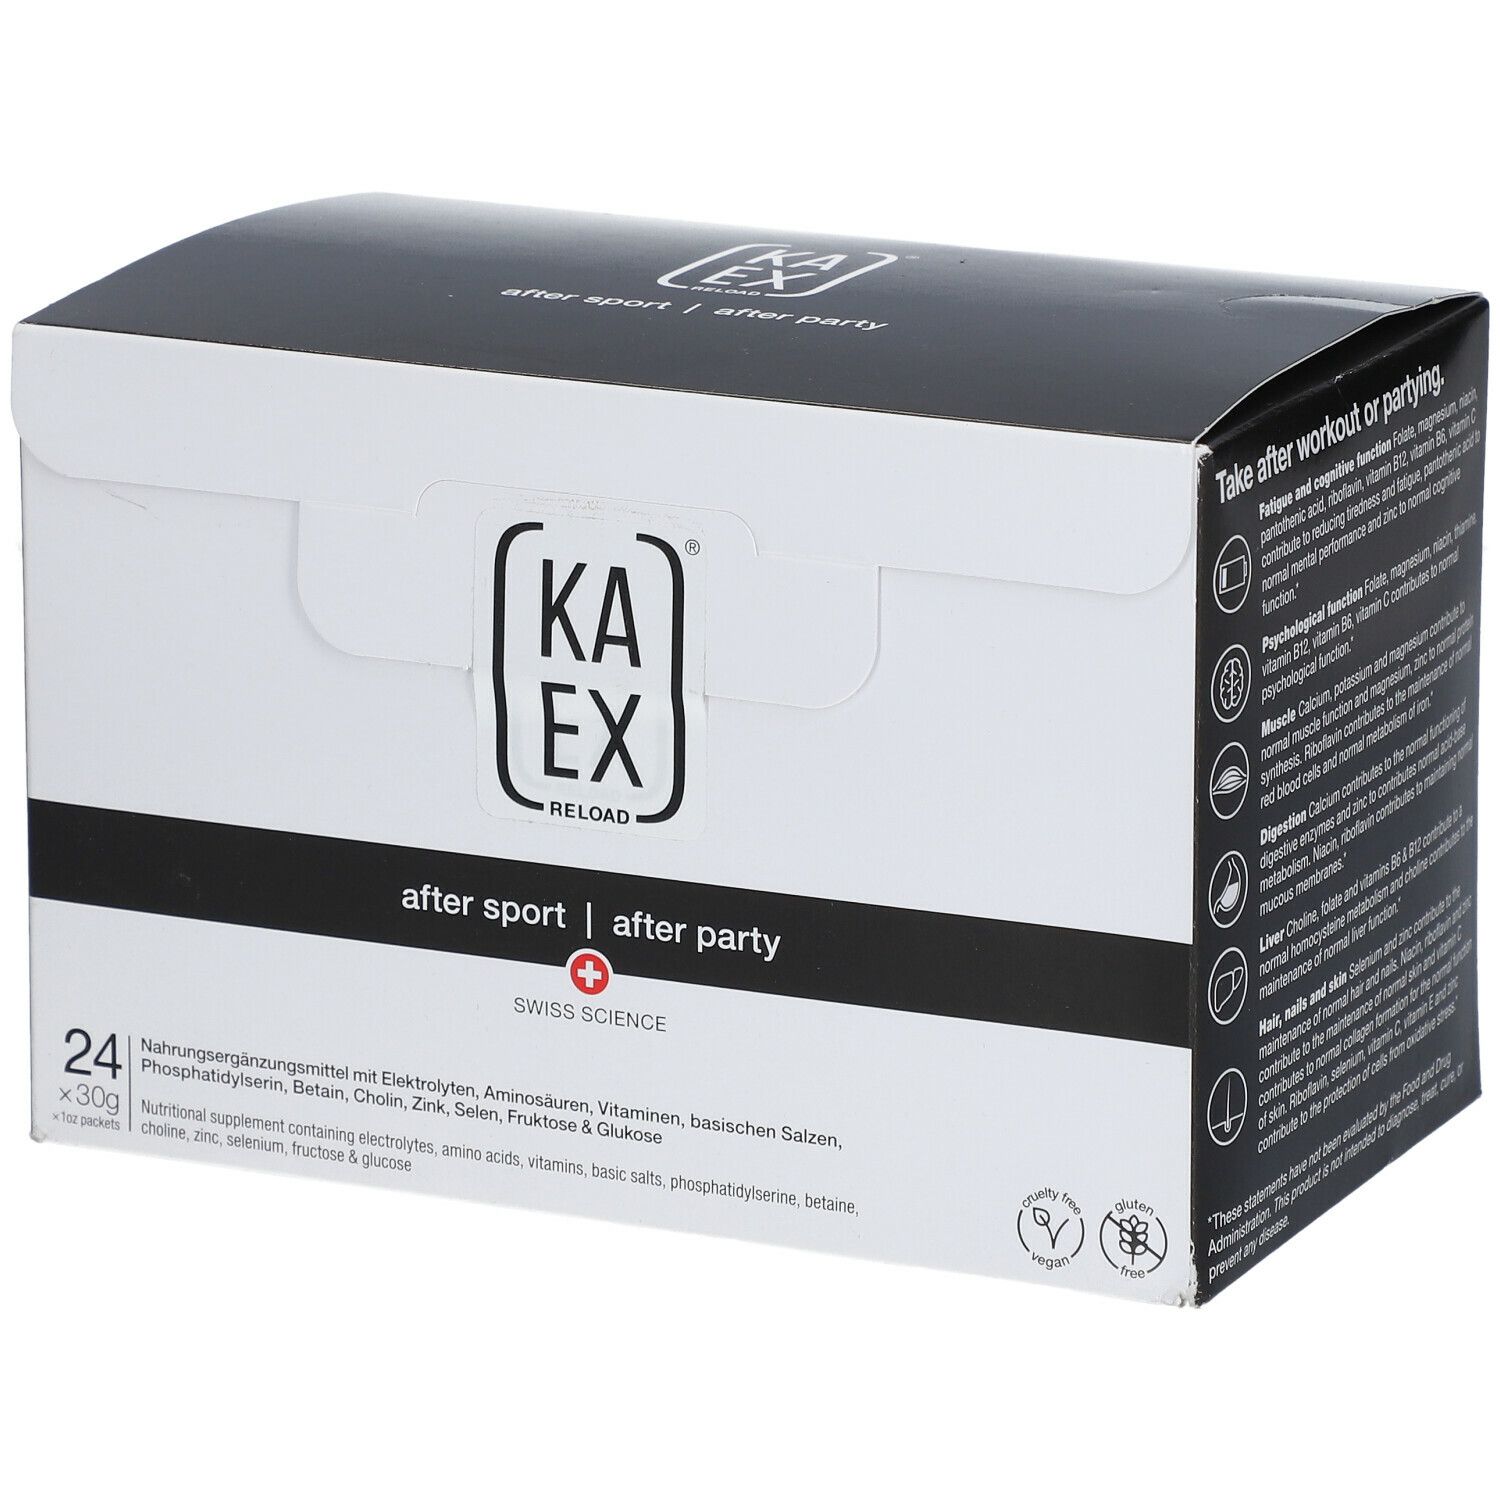 Kaex® Reload after sport